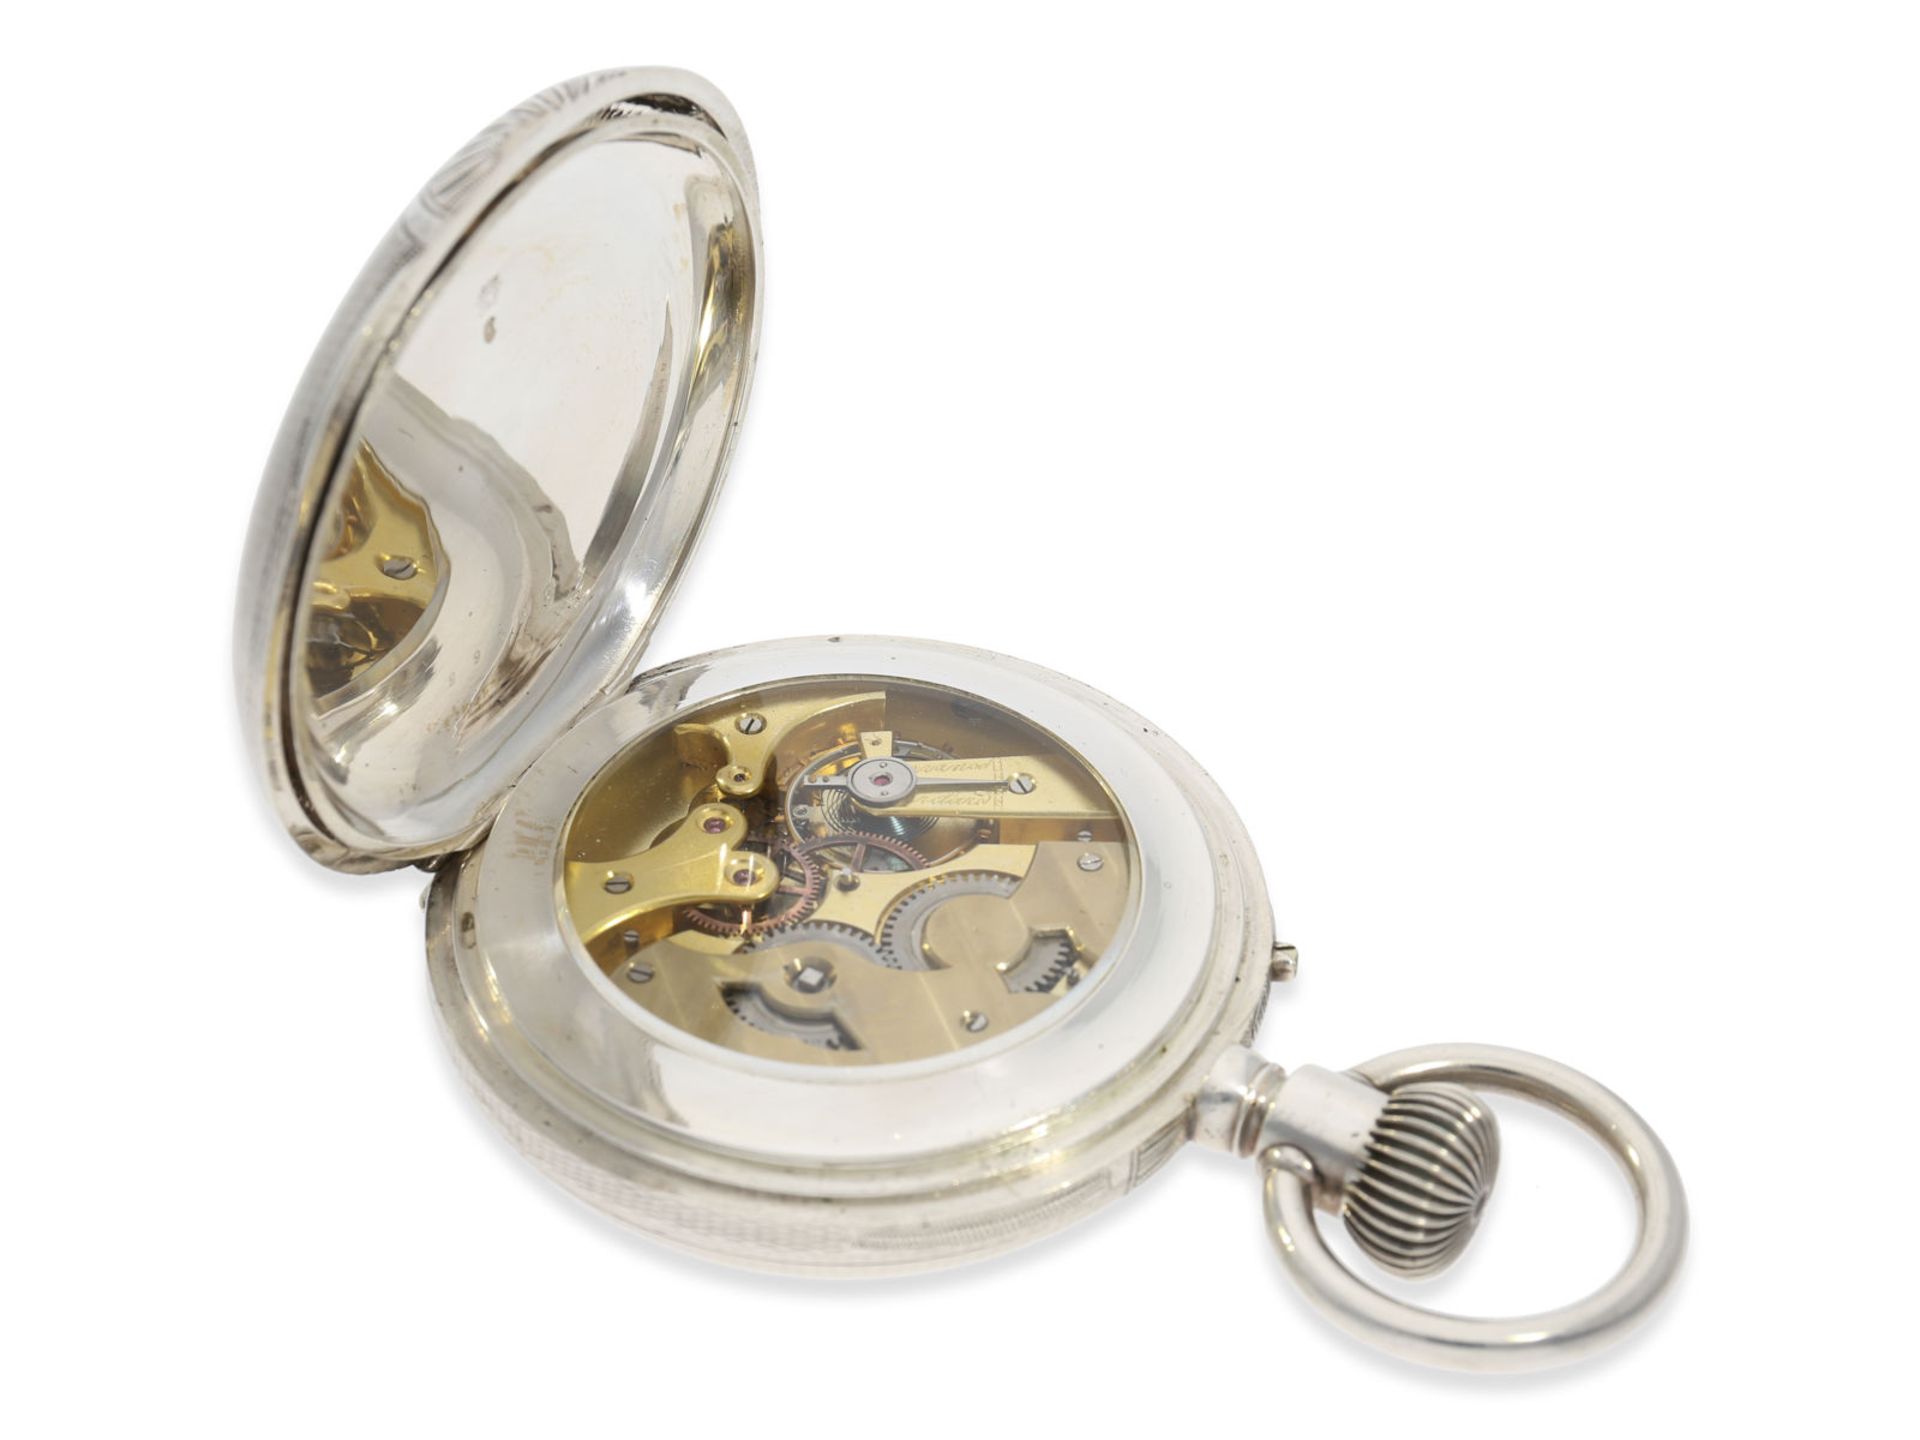 Taschenuhr: außergewöhnlich große russische Kalender-Uhr, Ankerchronometer in schwerem Silbergehäuse - Bild 4 aus 5